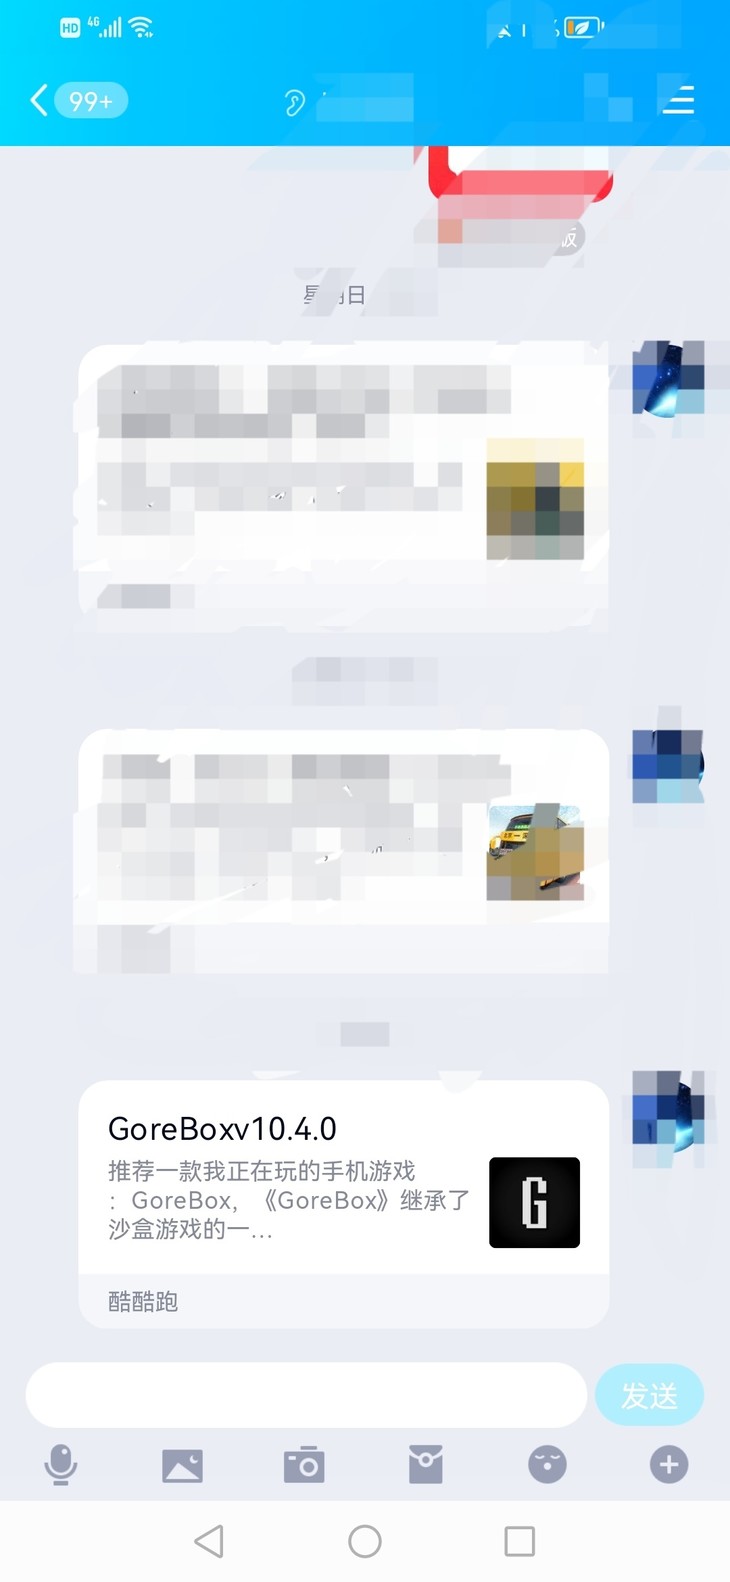 GoreBox嗨圈活动:我也不知道叫什么的活动(己截止)